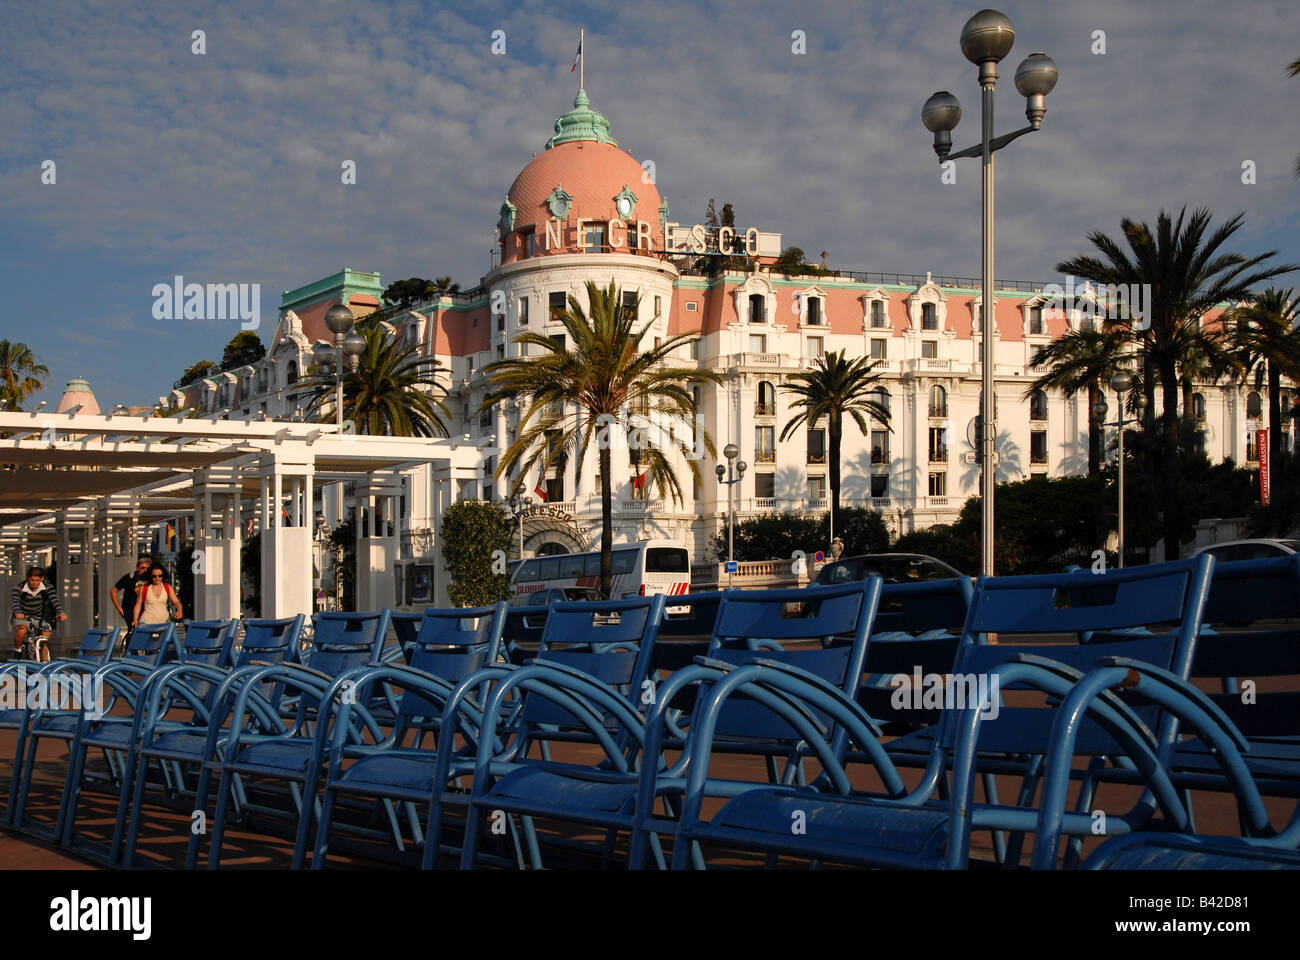 Hotel Negresco Nice Cote d Azur France Banque D'Images